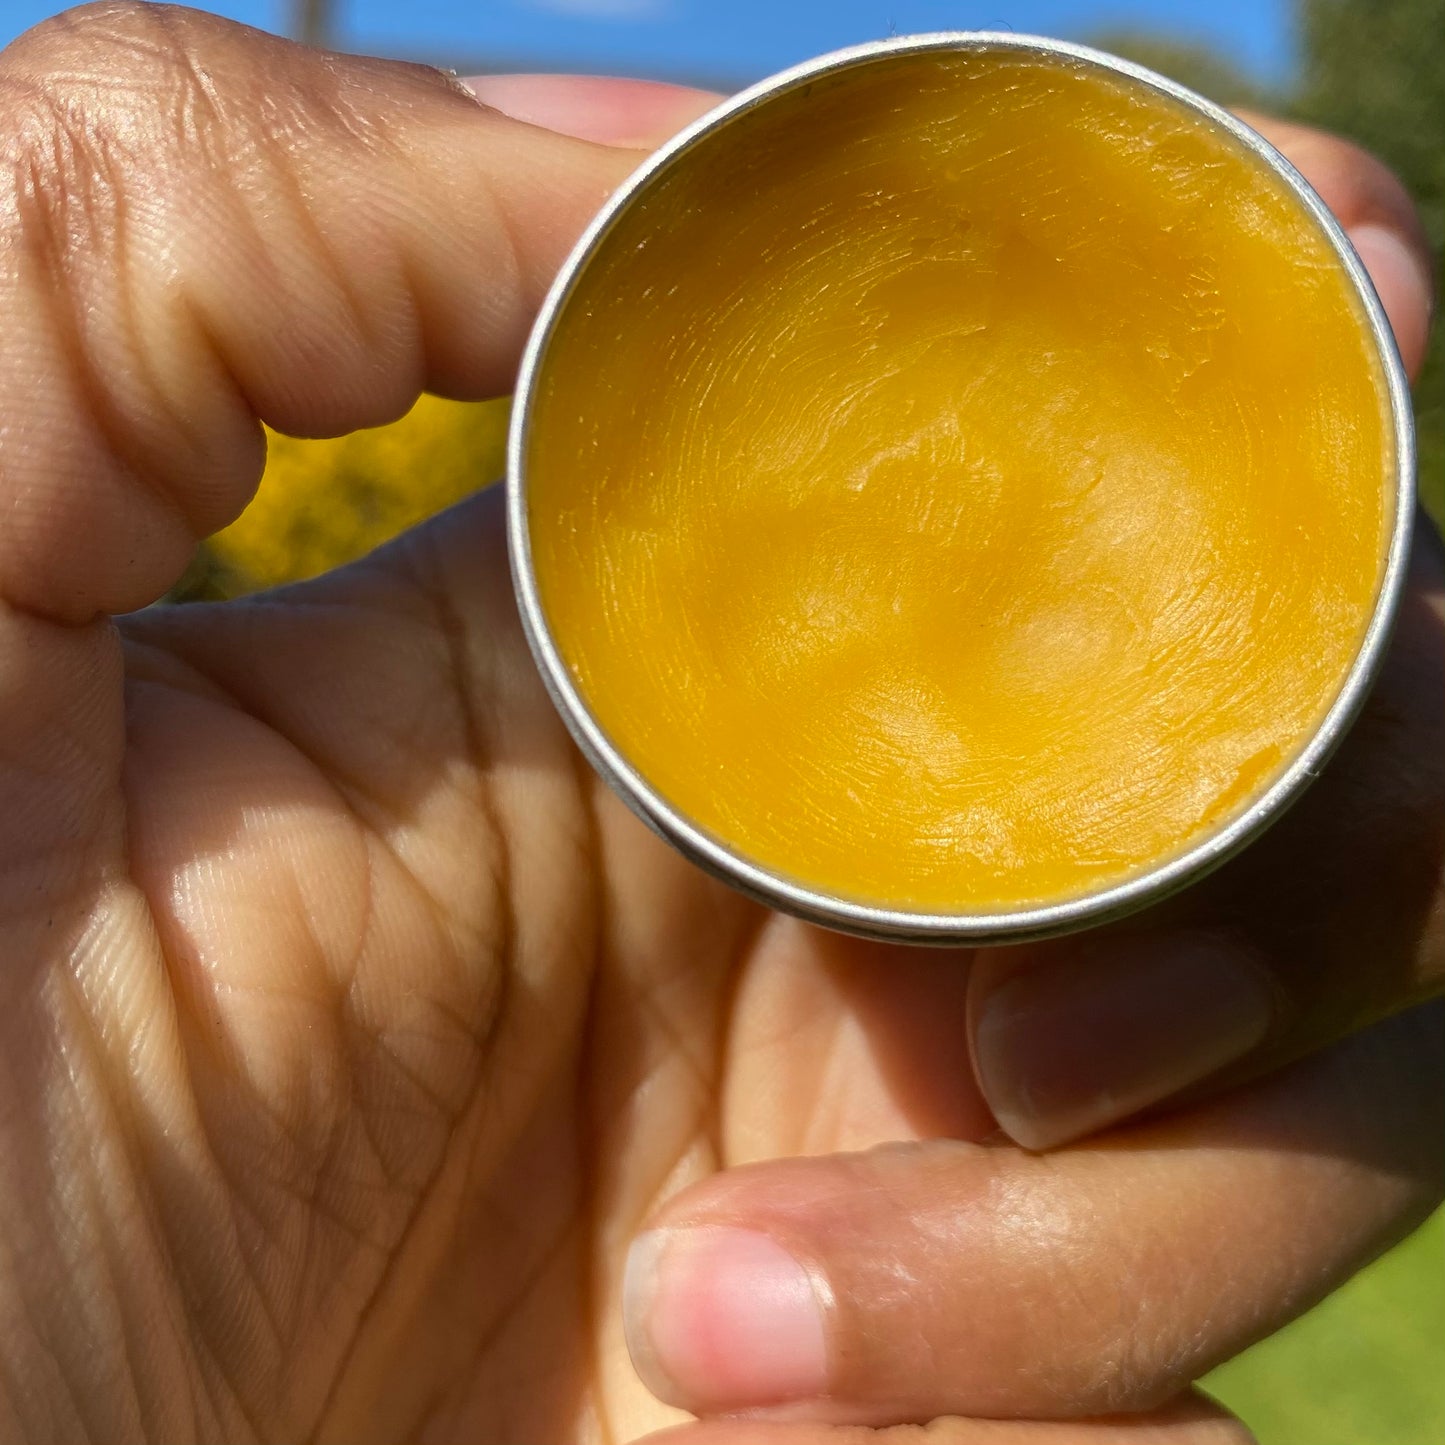 Sweet Orange Superfood Natural Lip Balm